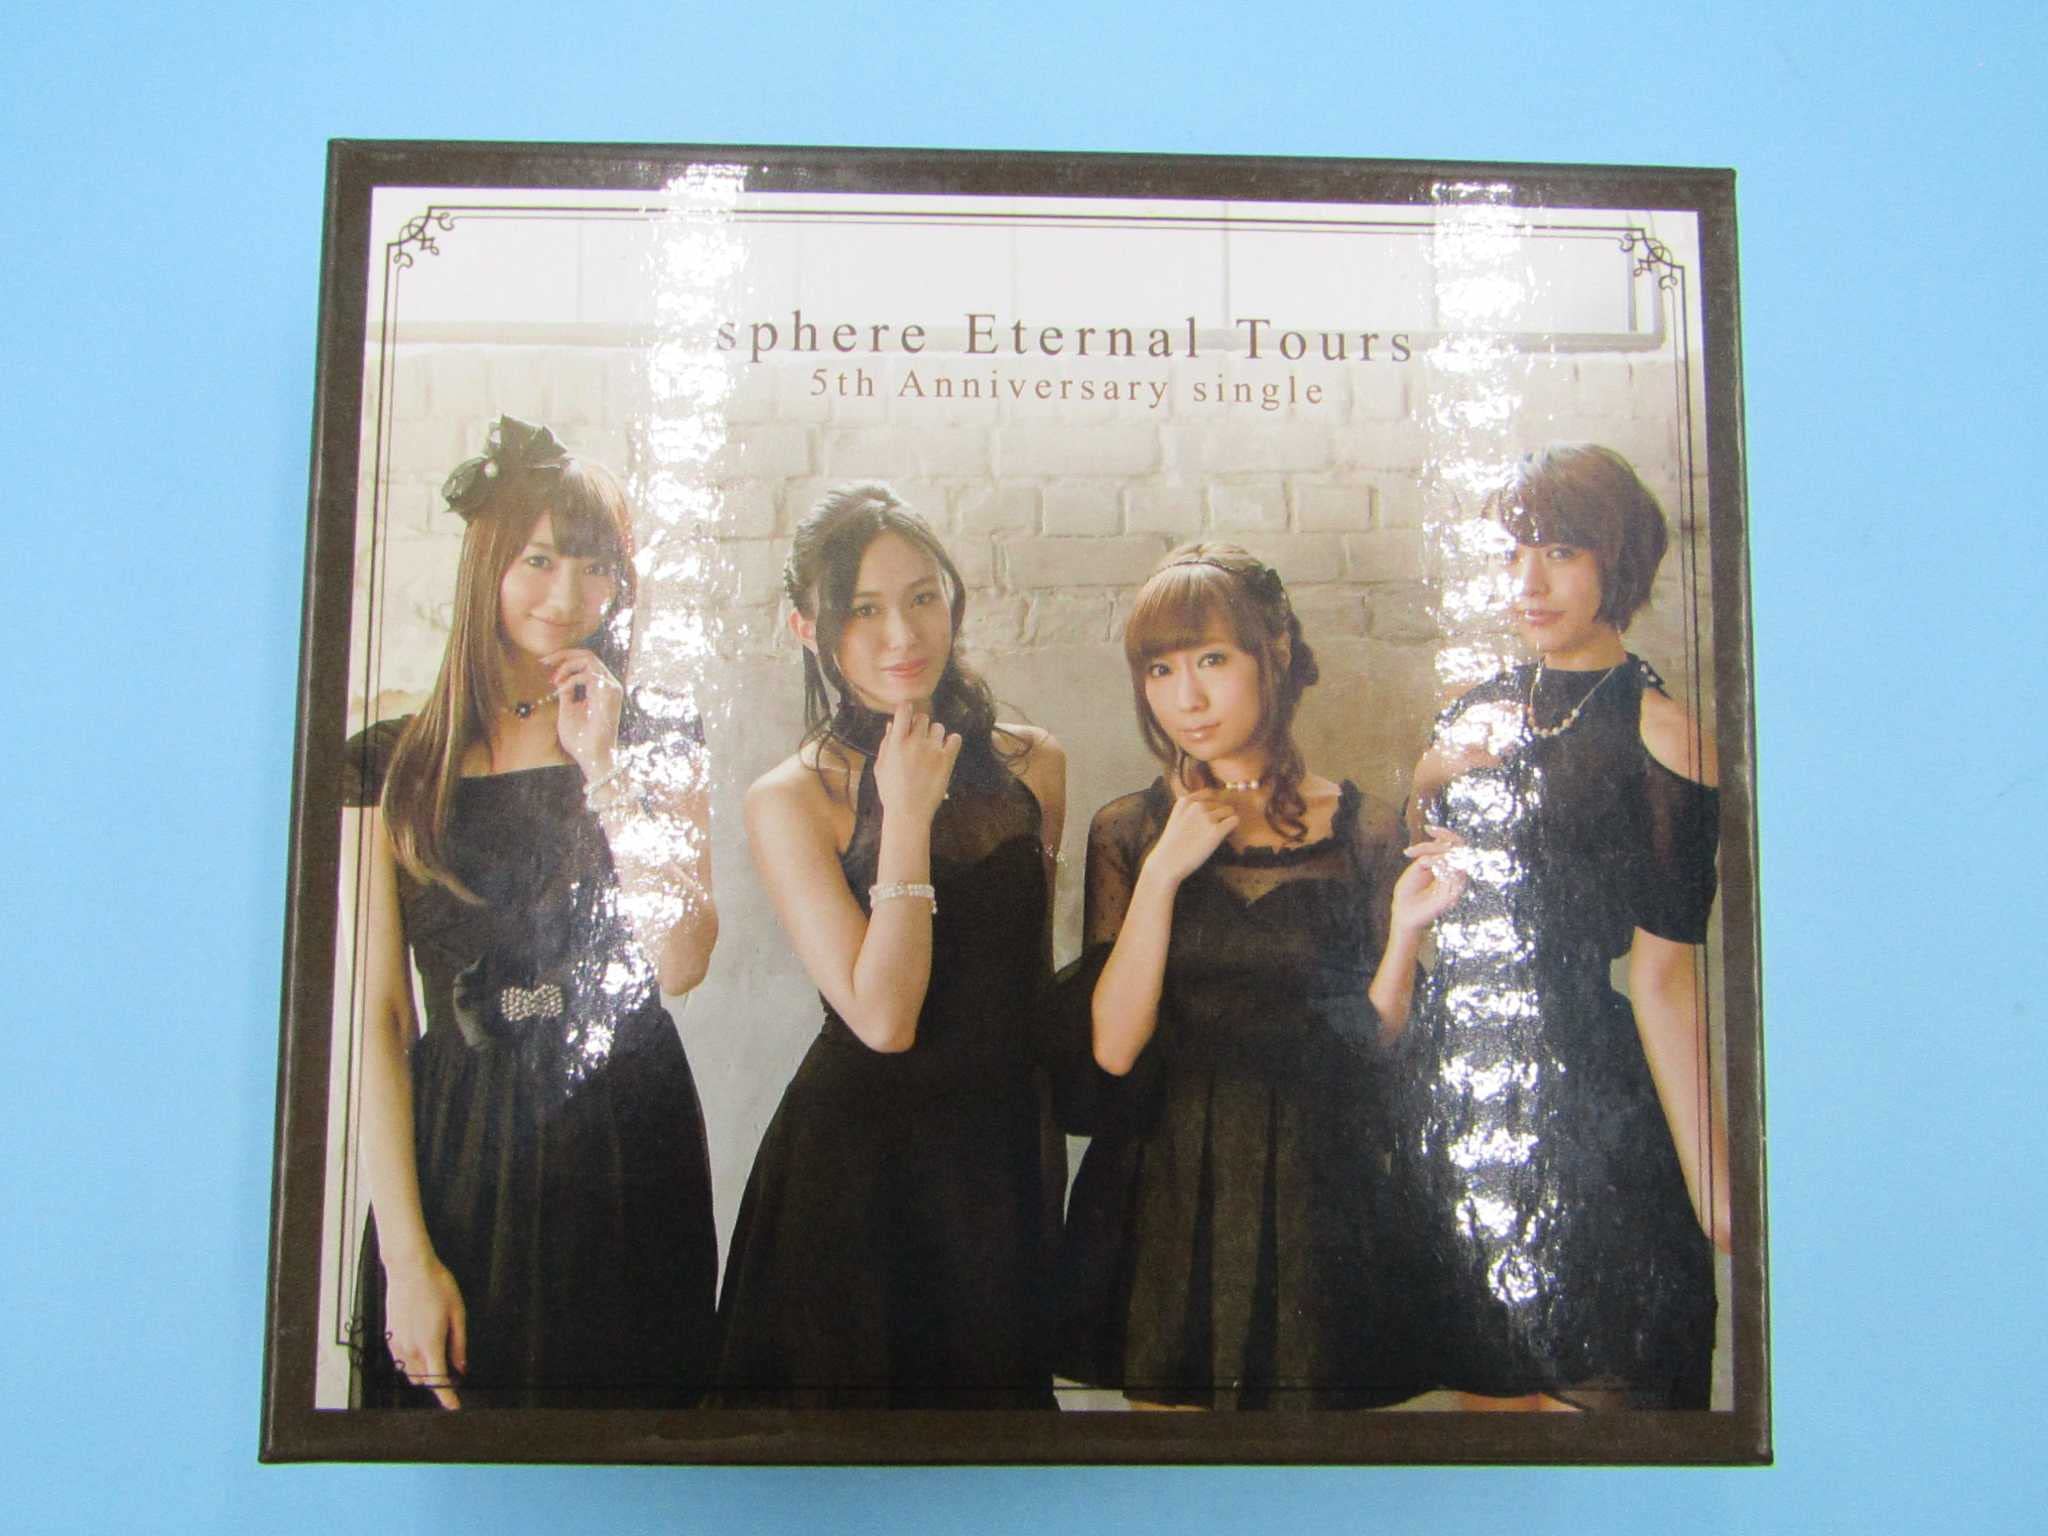 【中古】Eternal Tours(Type A) [CD] スフィア Type A・B・C・Dの合計4巻セット収納BOX